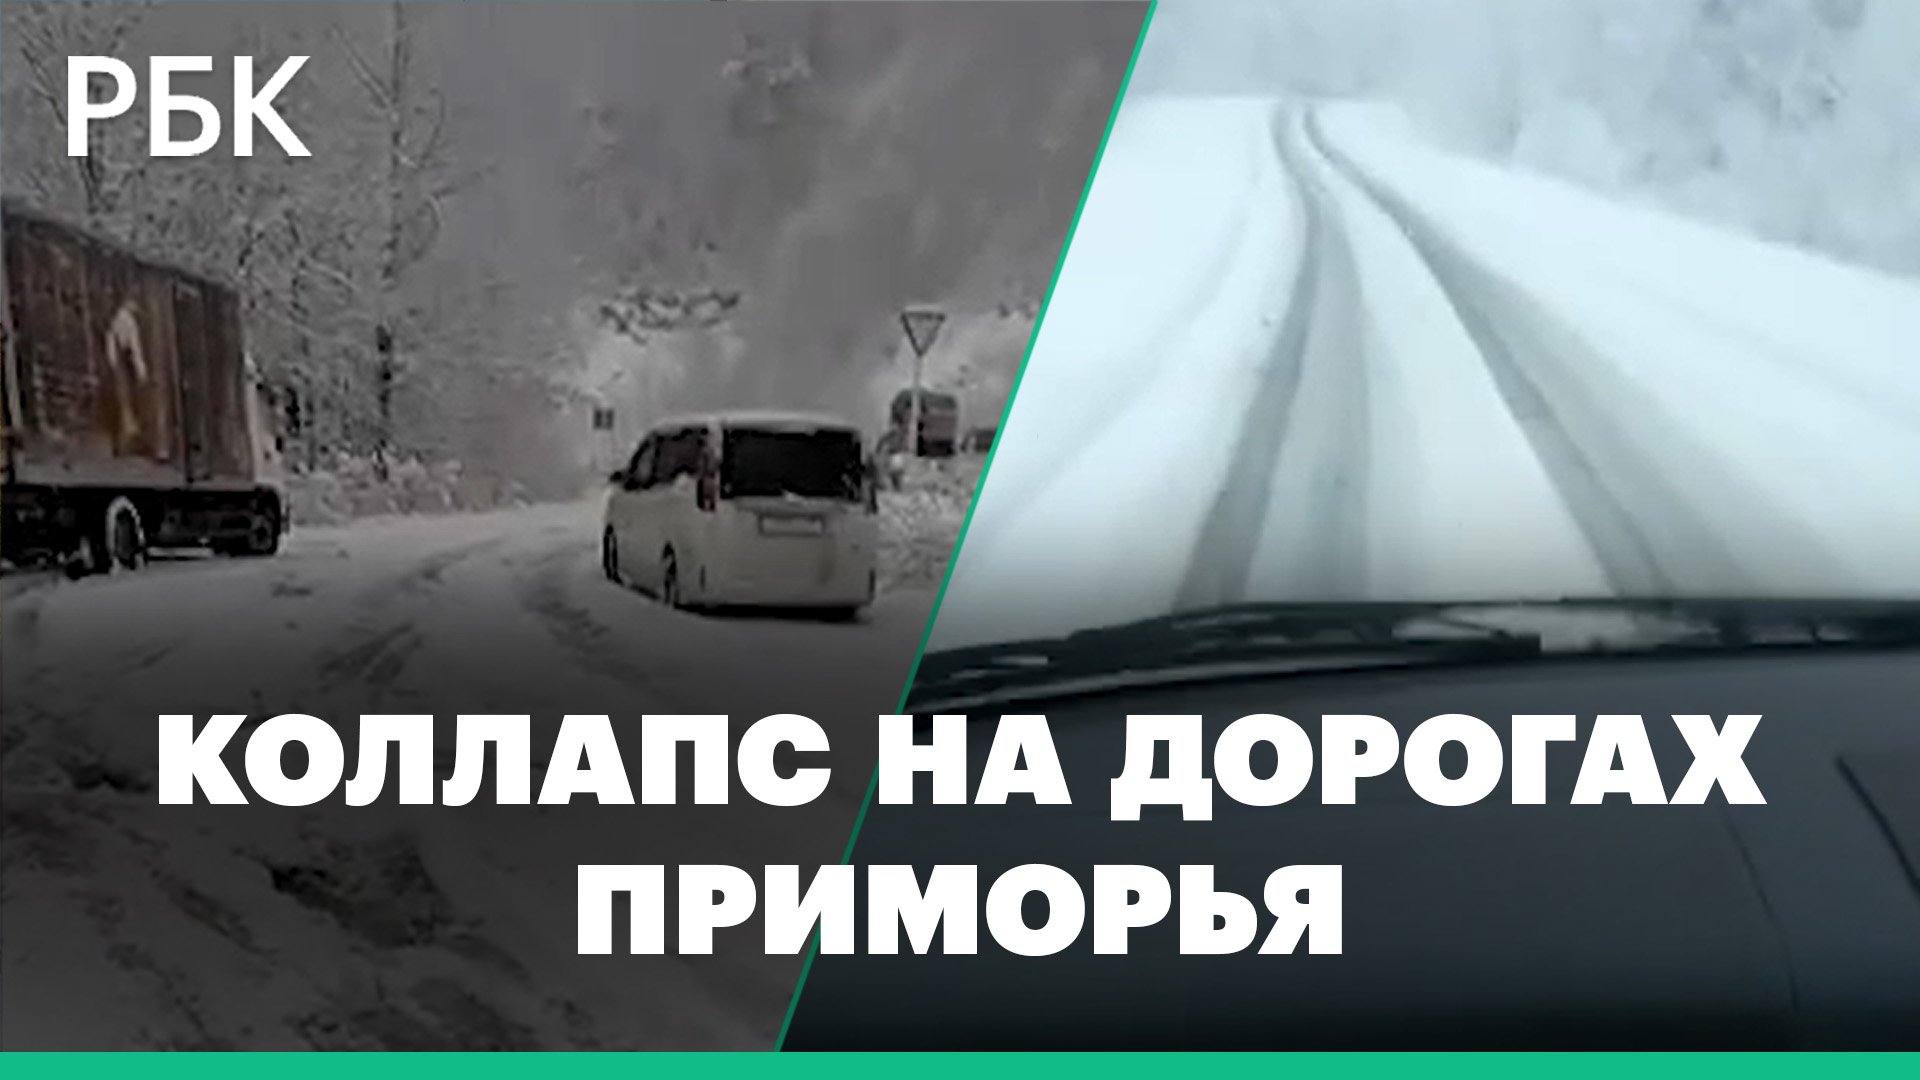 Пассажиры идут с вещами по дороге. Снегопад вызвал транспортный коллапс в Приморье: видео